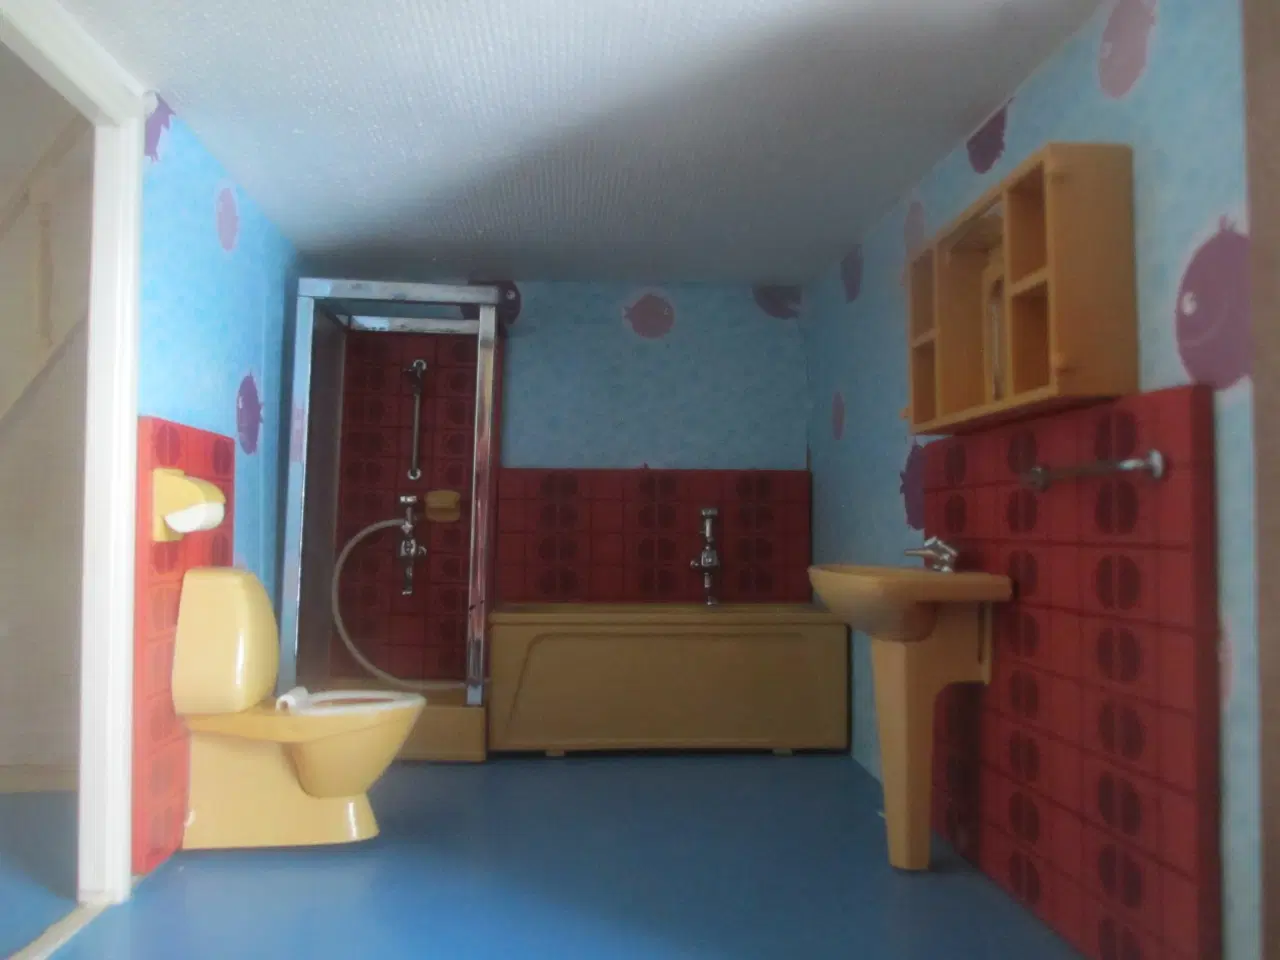 Billede 7 - brugt dukkehus med  badeværelse i og andet